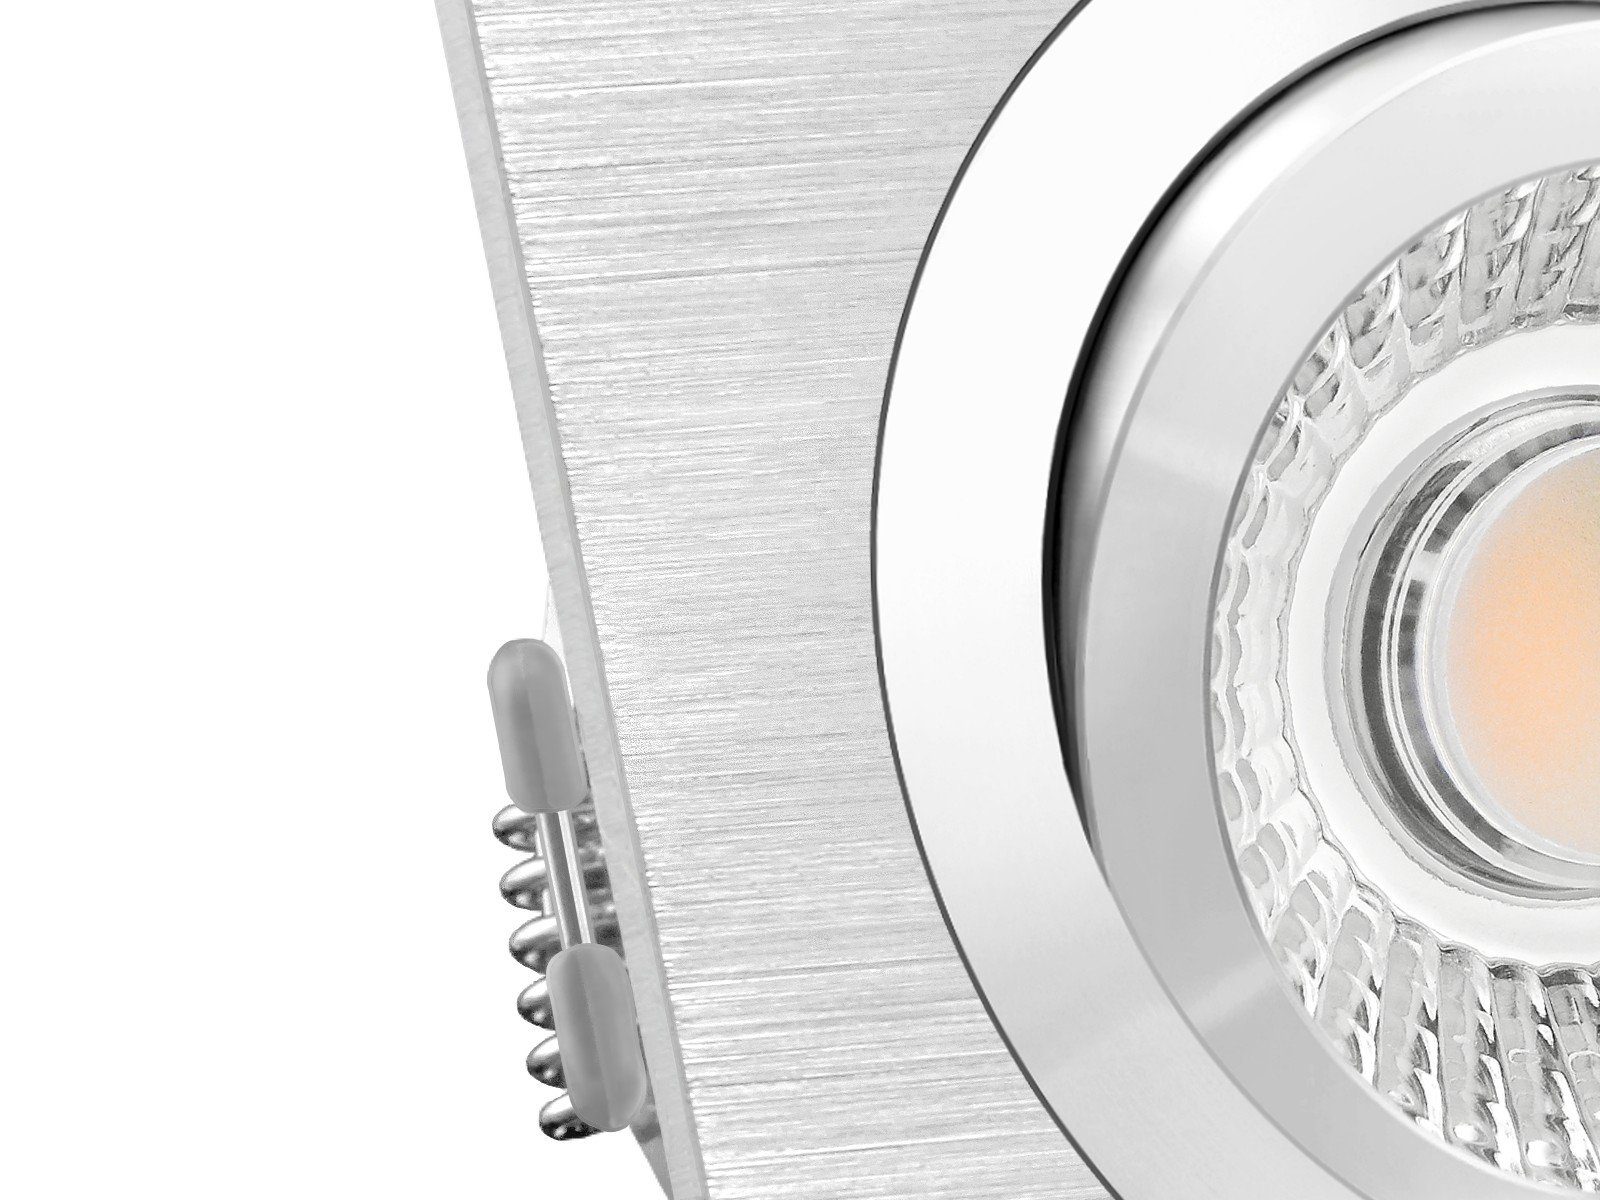 flach LED SSC-LUXon Einbaustrahler LED-Modul schwenkbar QF-2 230V, 6W, Warmweiß LED-Einbauspot mit Alu